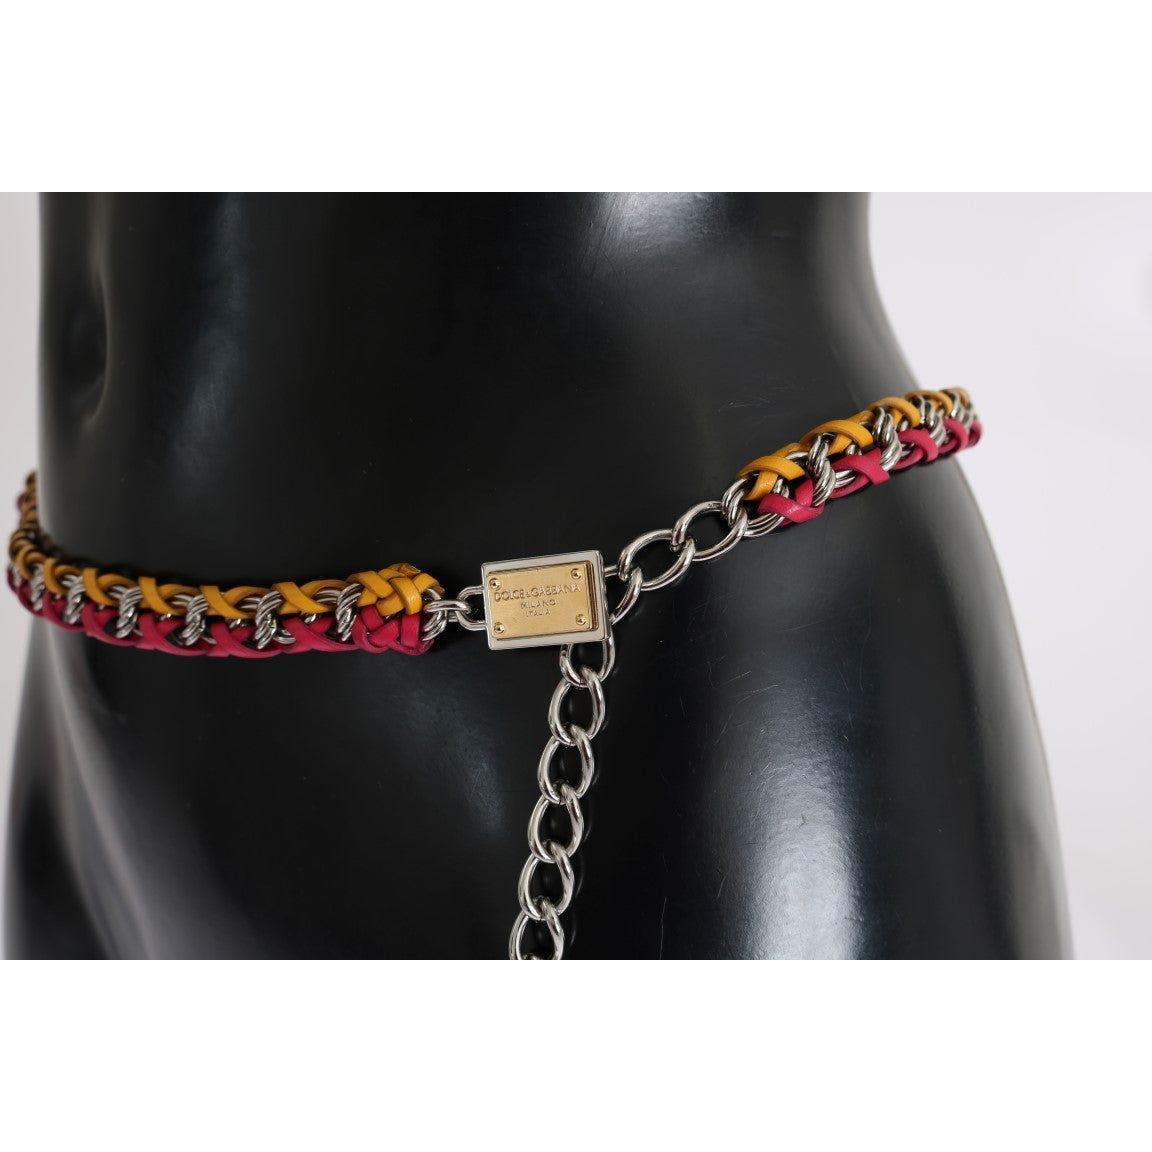 Dolce & Gabbana Elegant Multicolor Crystal-Embellished Belt red-yellow-leather-crystal-belt Belt